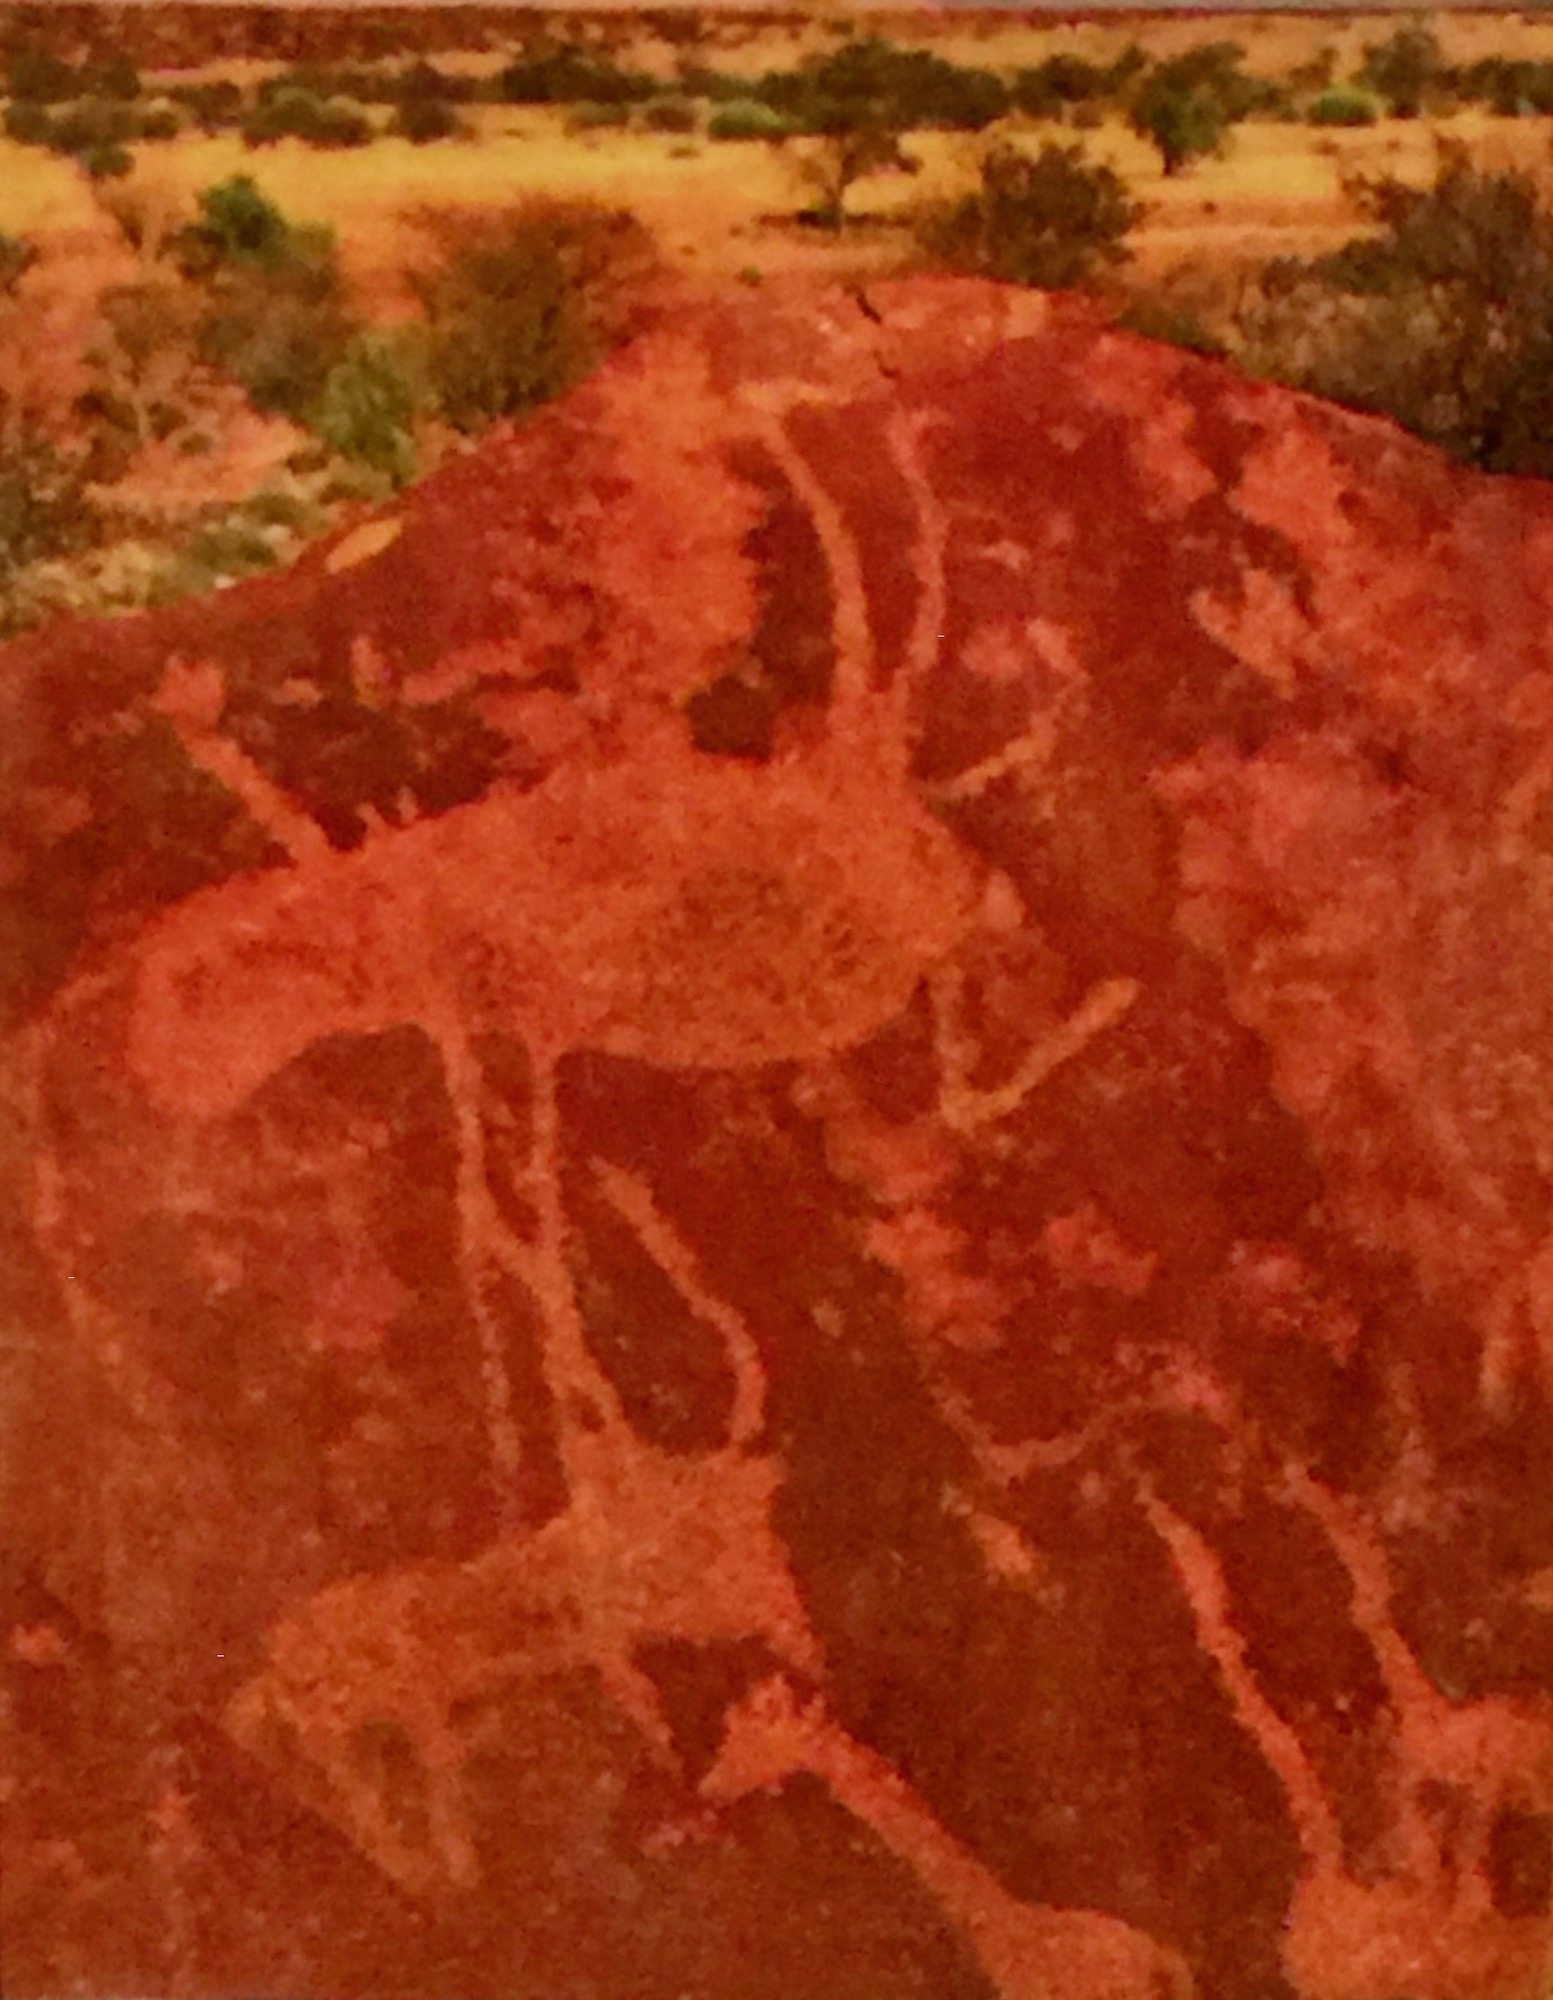 Twyfelfontein Petroglyph 5